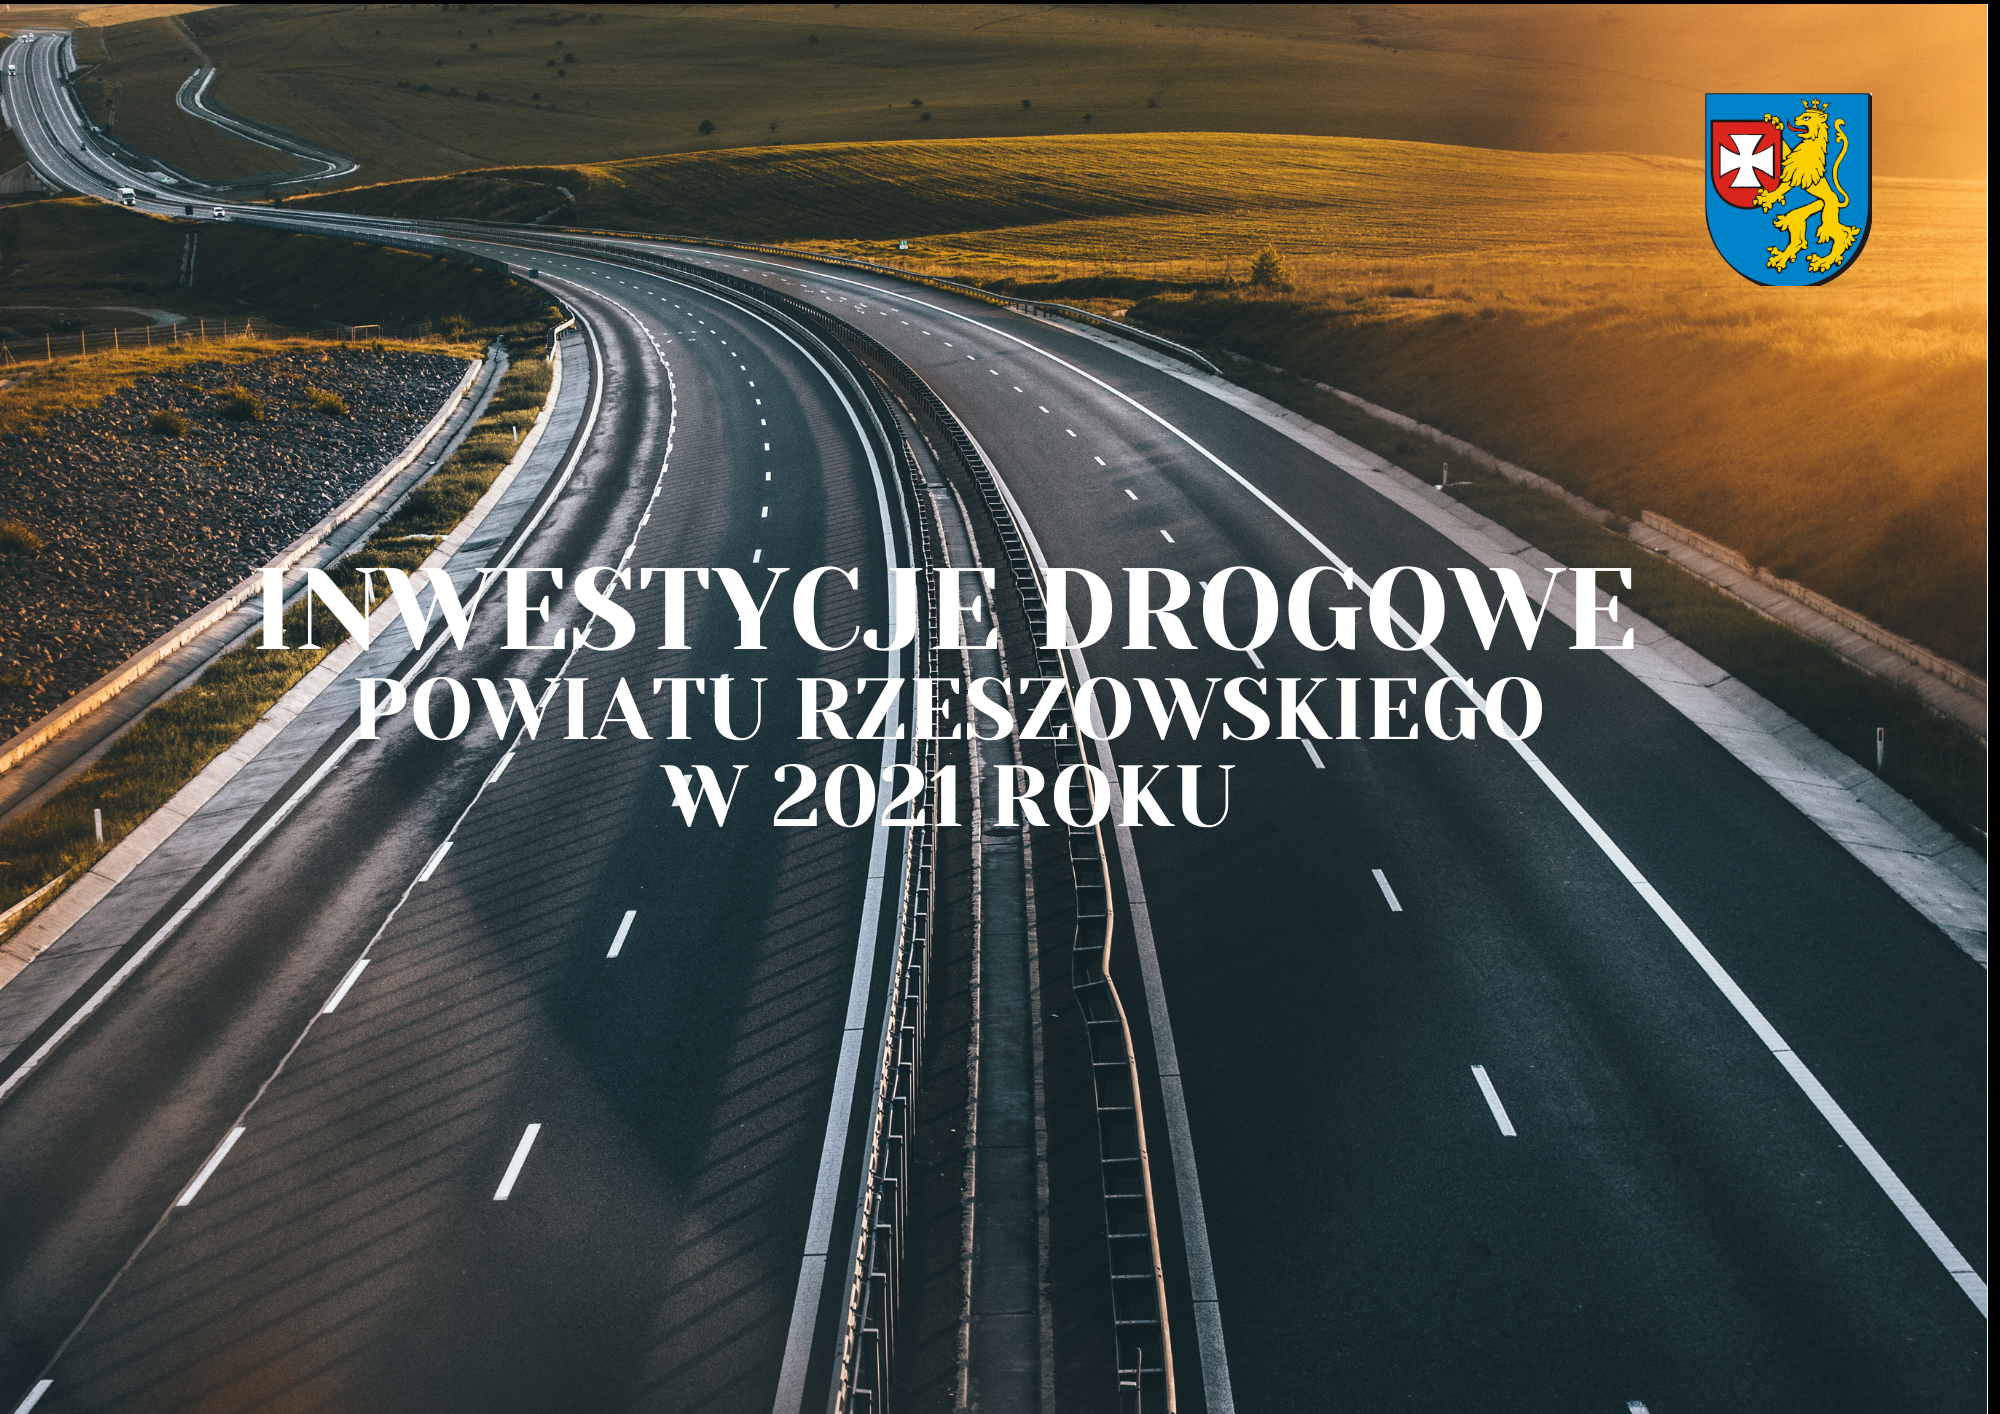 https://powiat.rzeszowski.pl/blog/2021/02/02/strategiczne-inwestycje-drogowe-powiatu-rzeszowskiego/wazne-plany-powiatu-na-rok-2021-png/